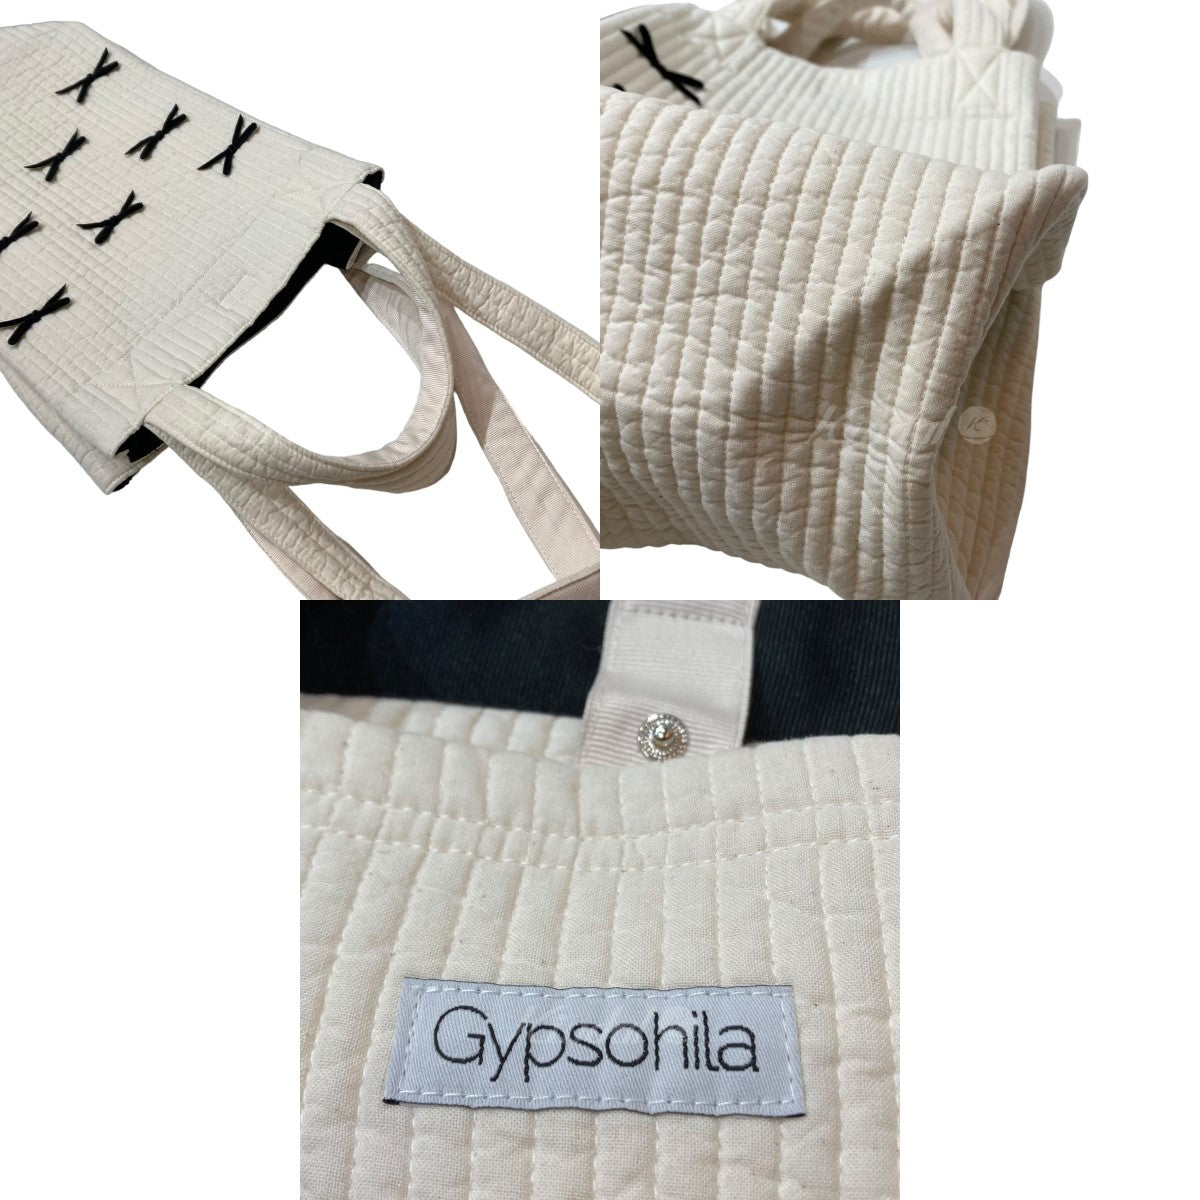 gypsohila(ジプソフィア) City Bag(T) シティーバッグ キルティング 